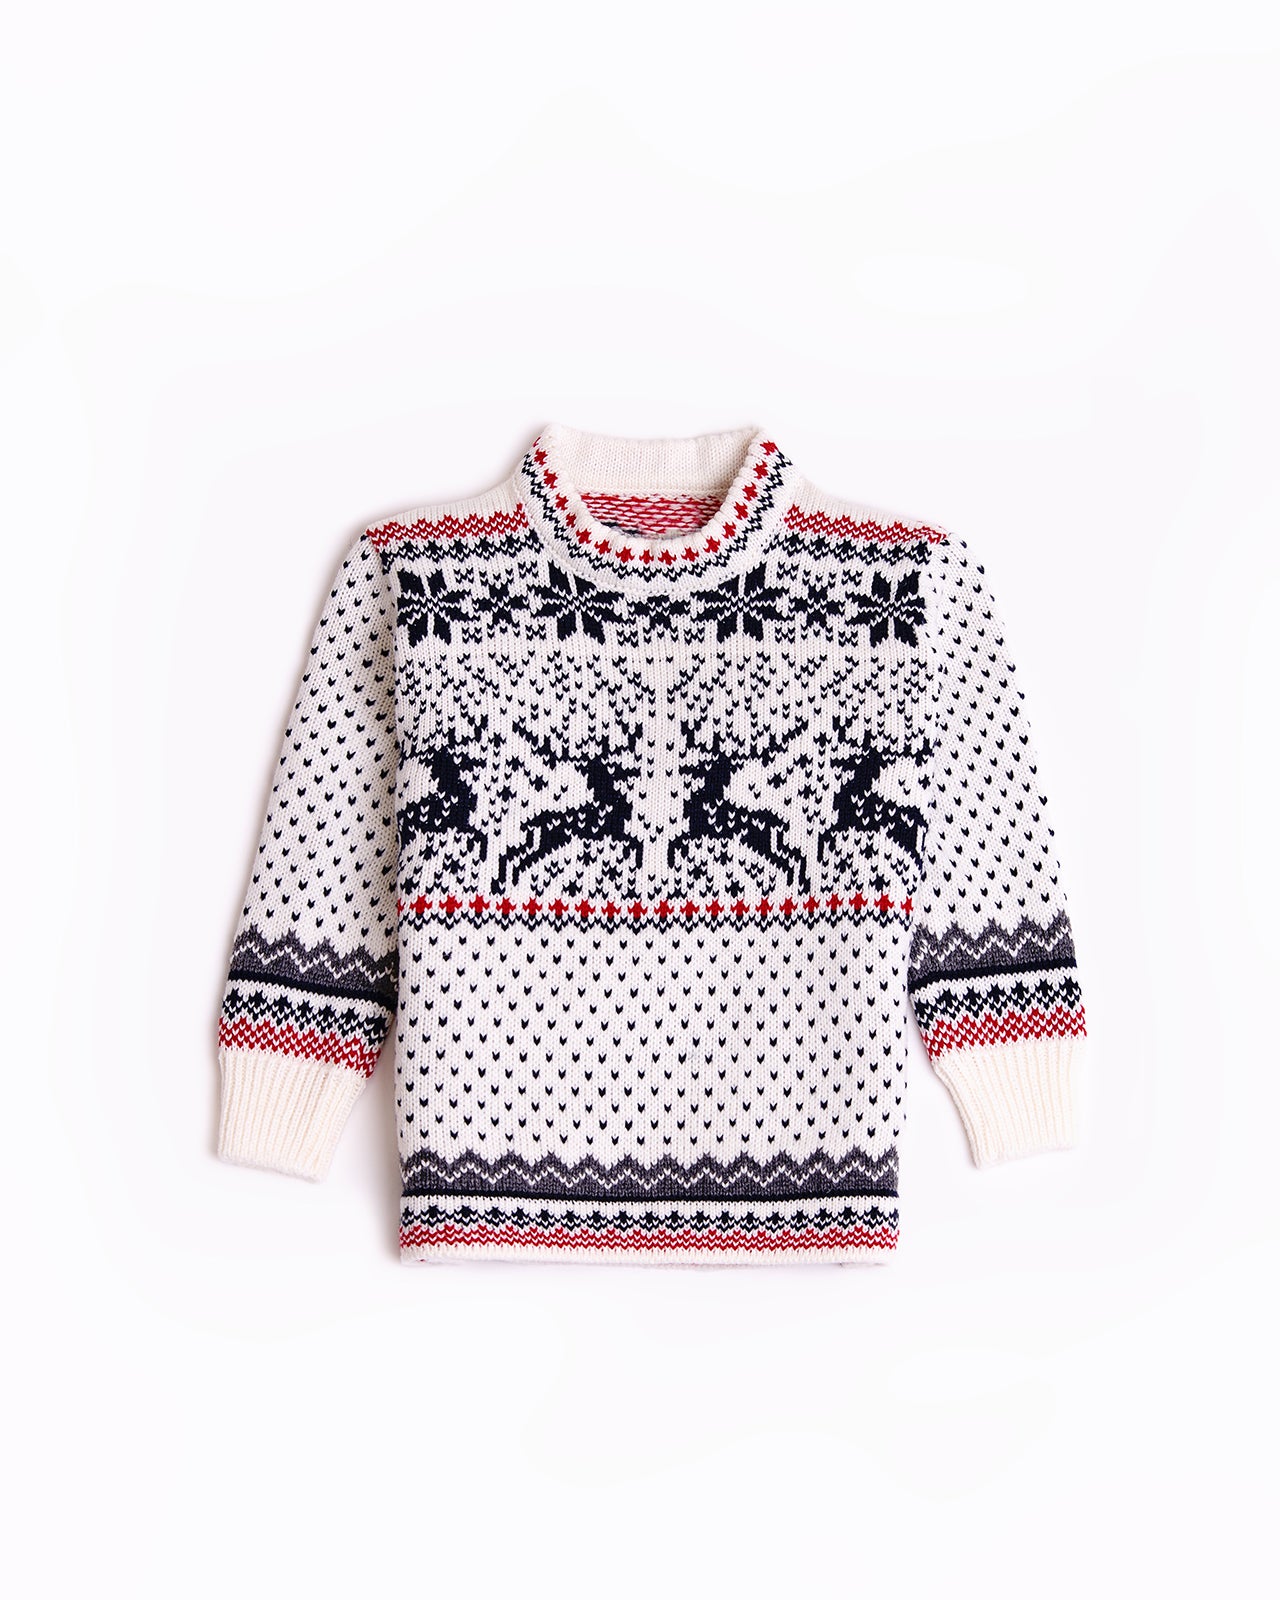 Reindeer kid's round sweater